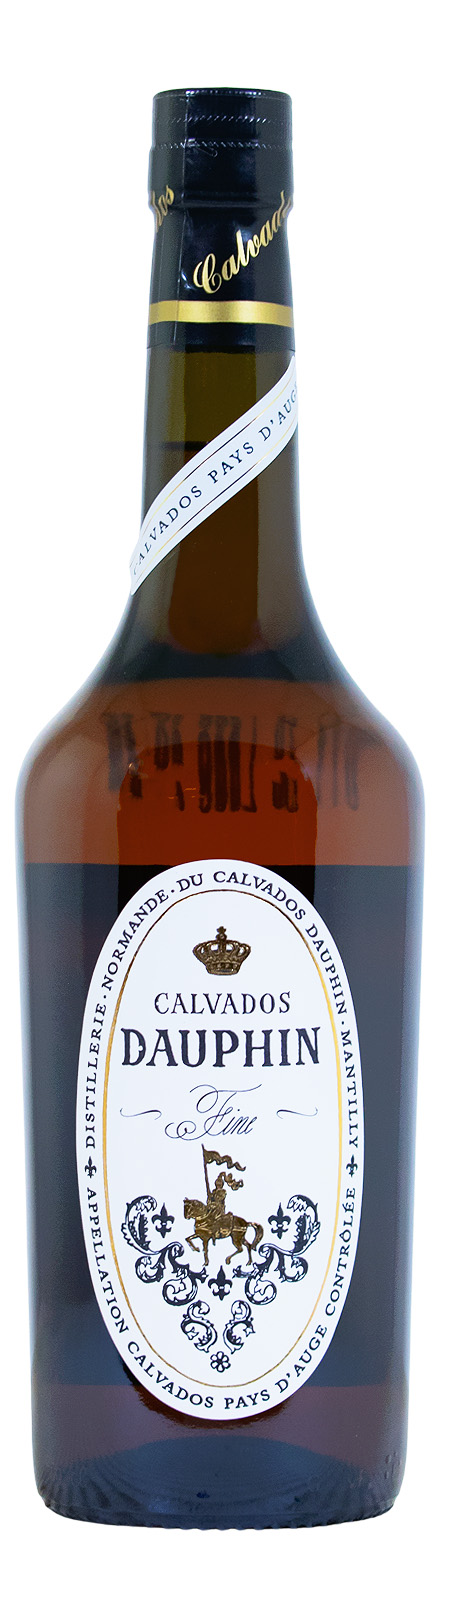 Dauphin Fine Pays dAuge Calvados - 0,7L 40% vol